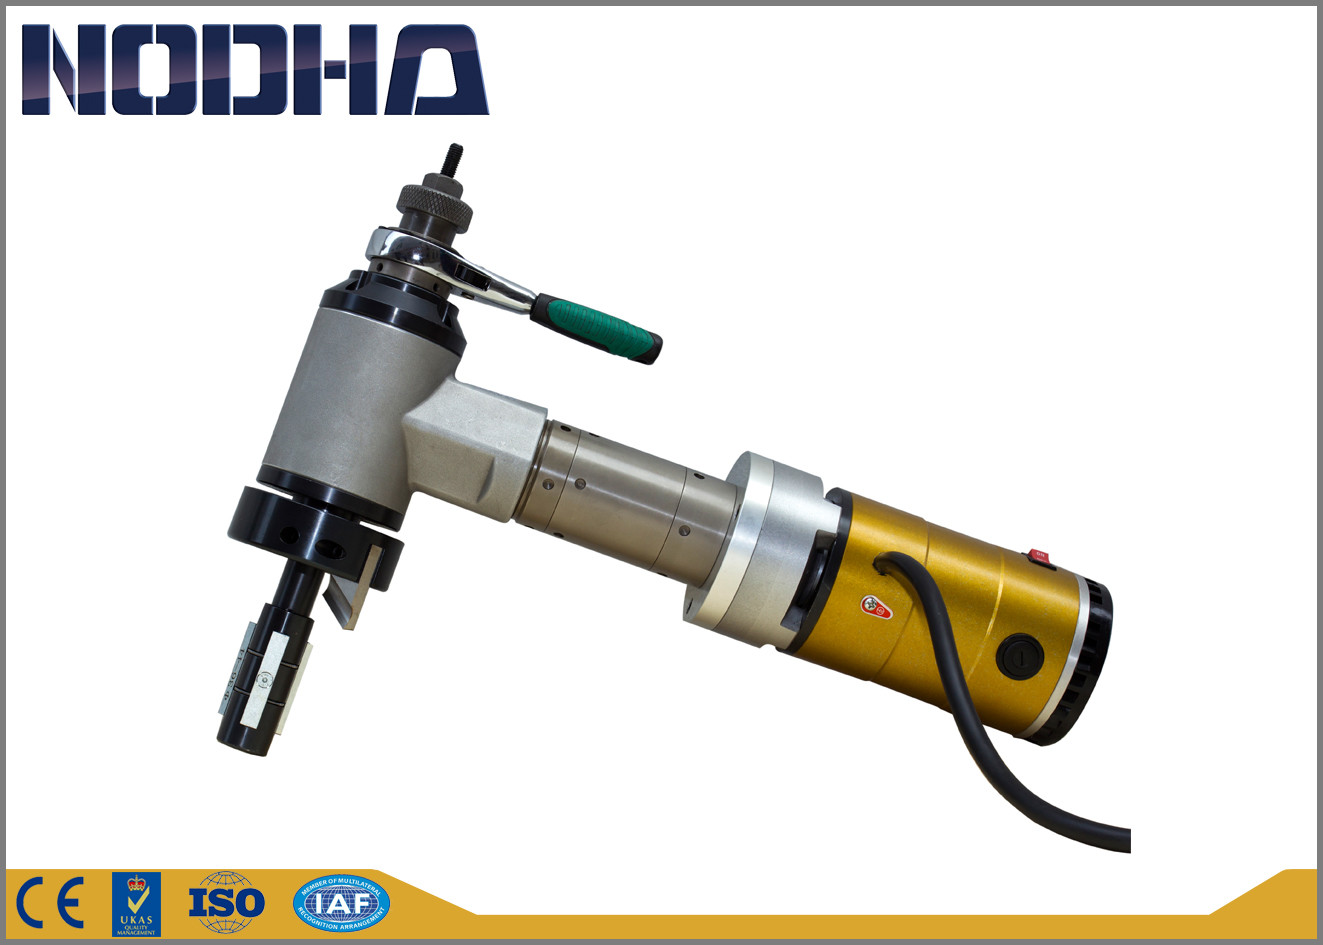 ID - maszyna do cięcia rur z napędem elektrycznym o napędzie elektrycznym Marka NODHA